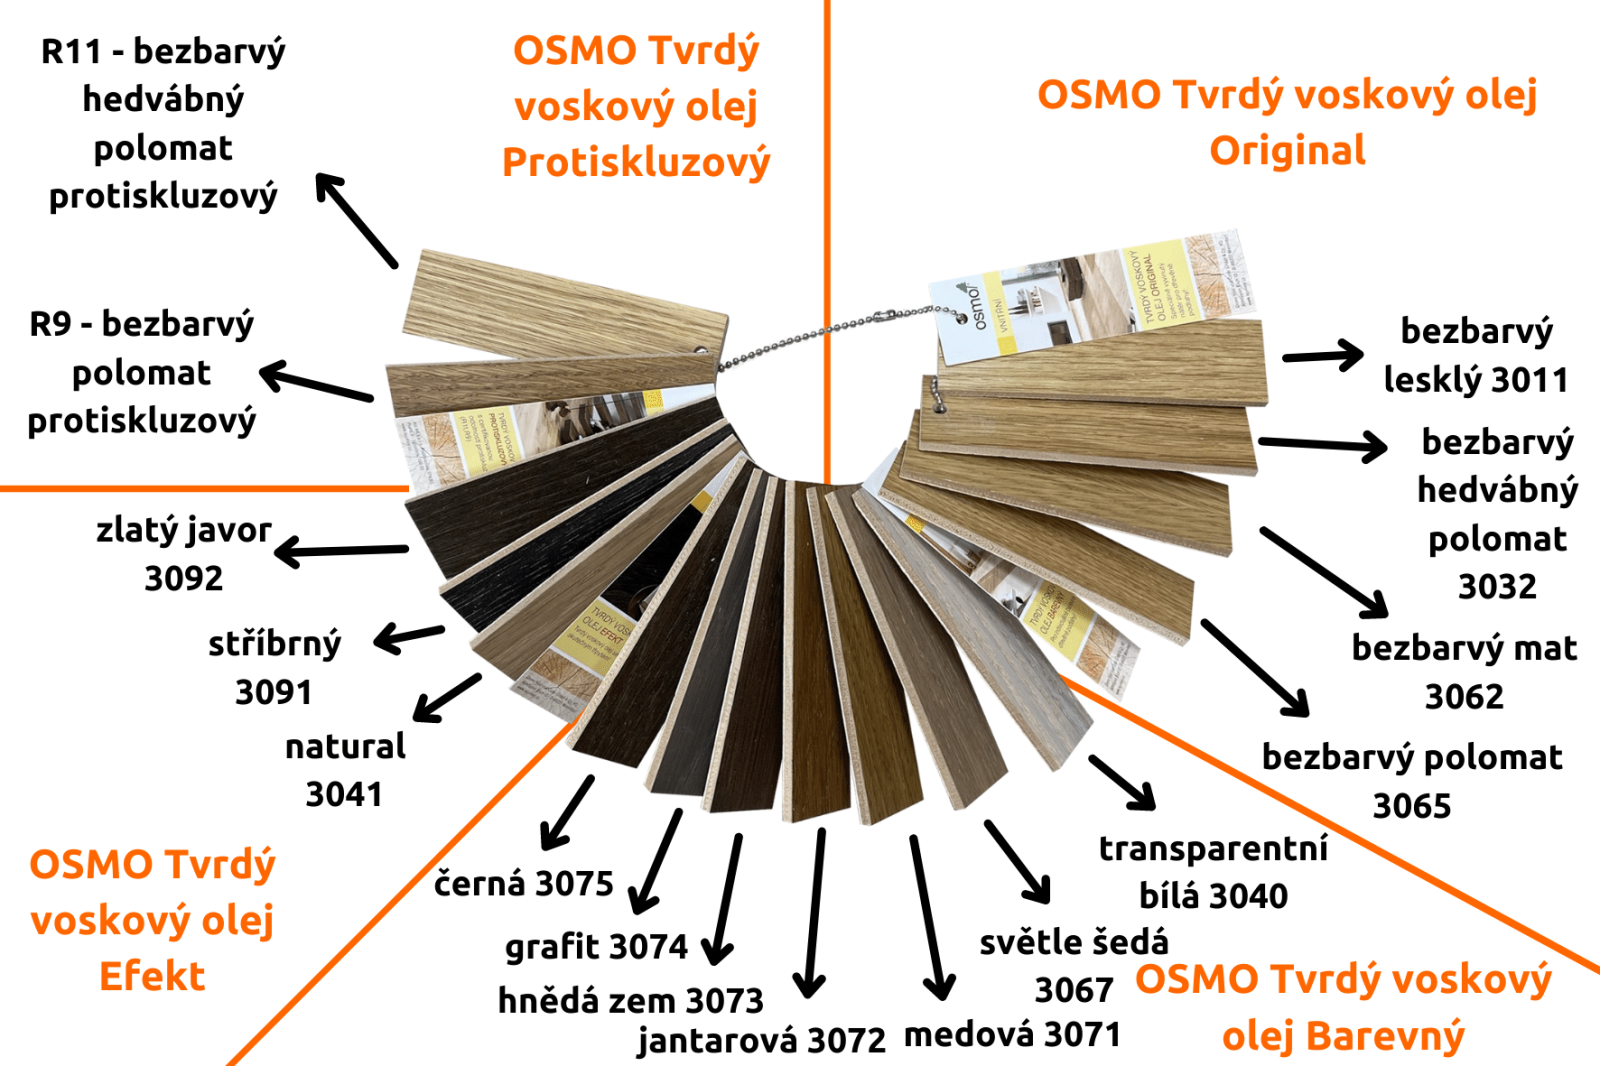 vzorník OSMO Tvrdé voskové oleje pro snadnější rozhodování